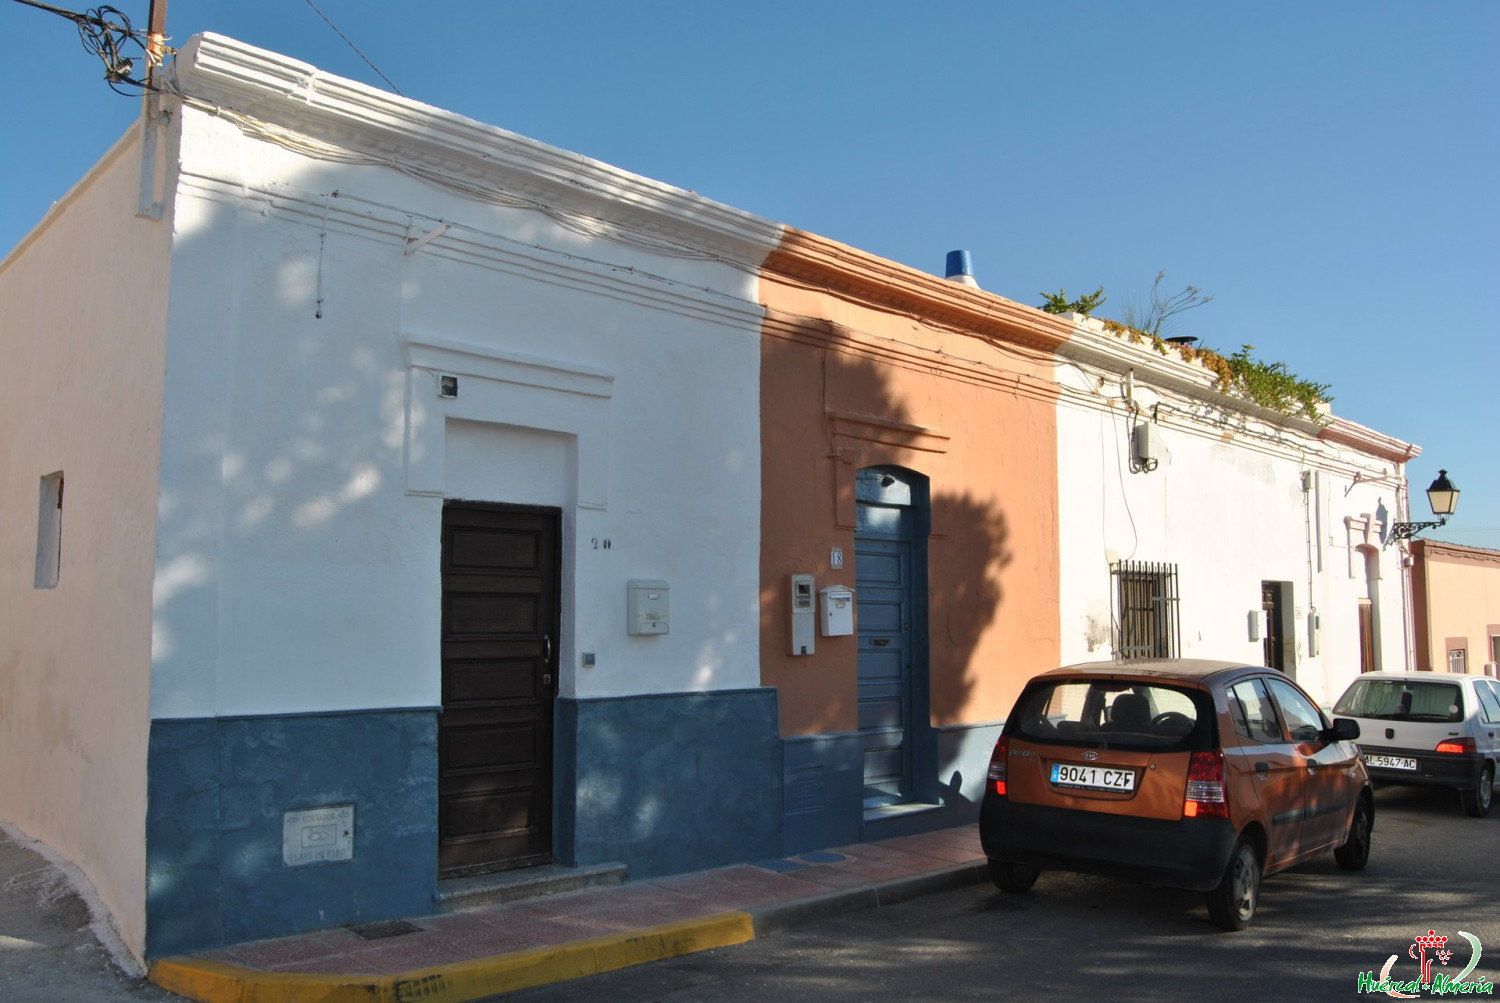 Casas de la calle Córdoba nºs 14, 16, 18 y 20